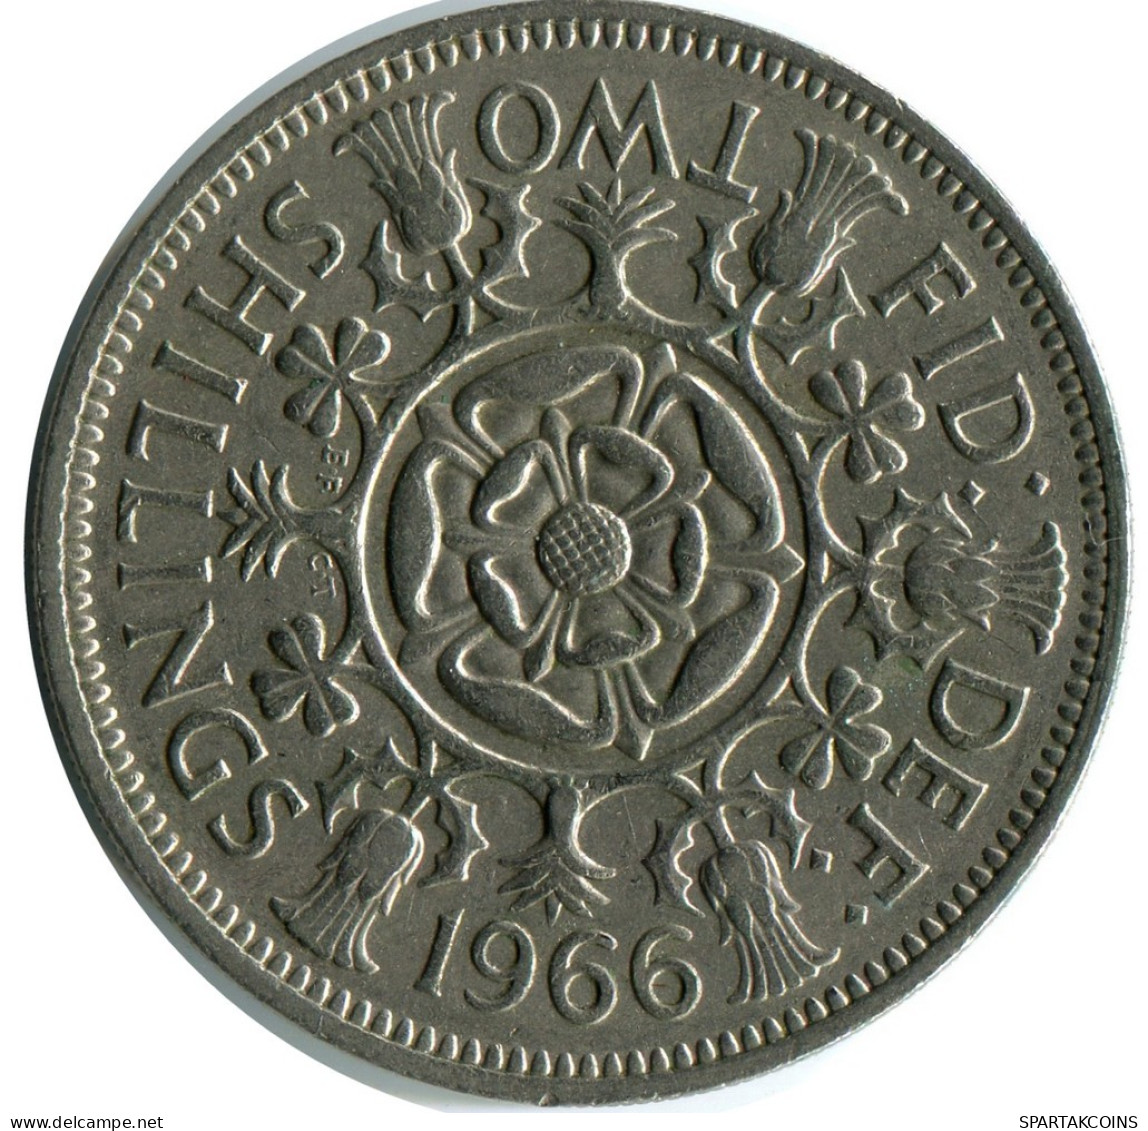 2 SHILLING 1966 UK GBAN BRETAÑA GREAT BRITAIN Moneda #AY998.E.A - J. 1 Florin / 2 Schillings